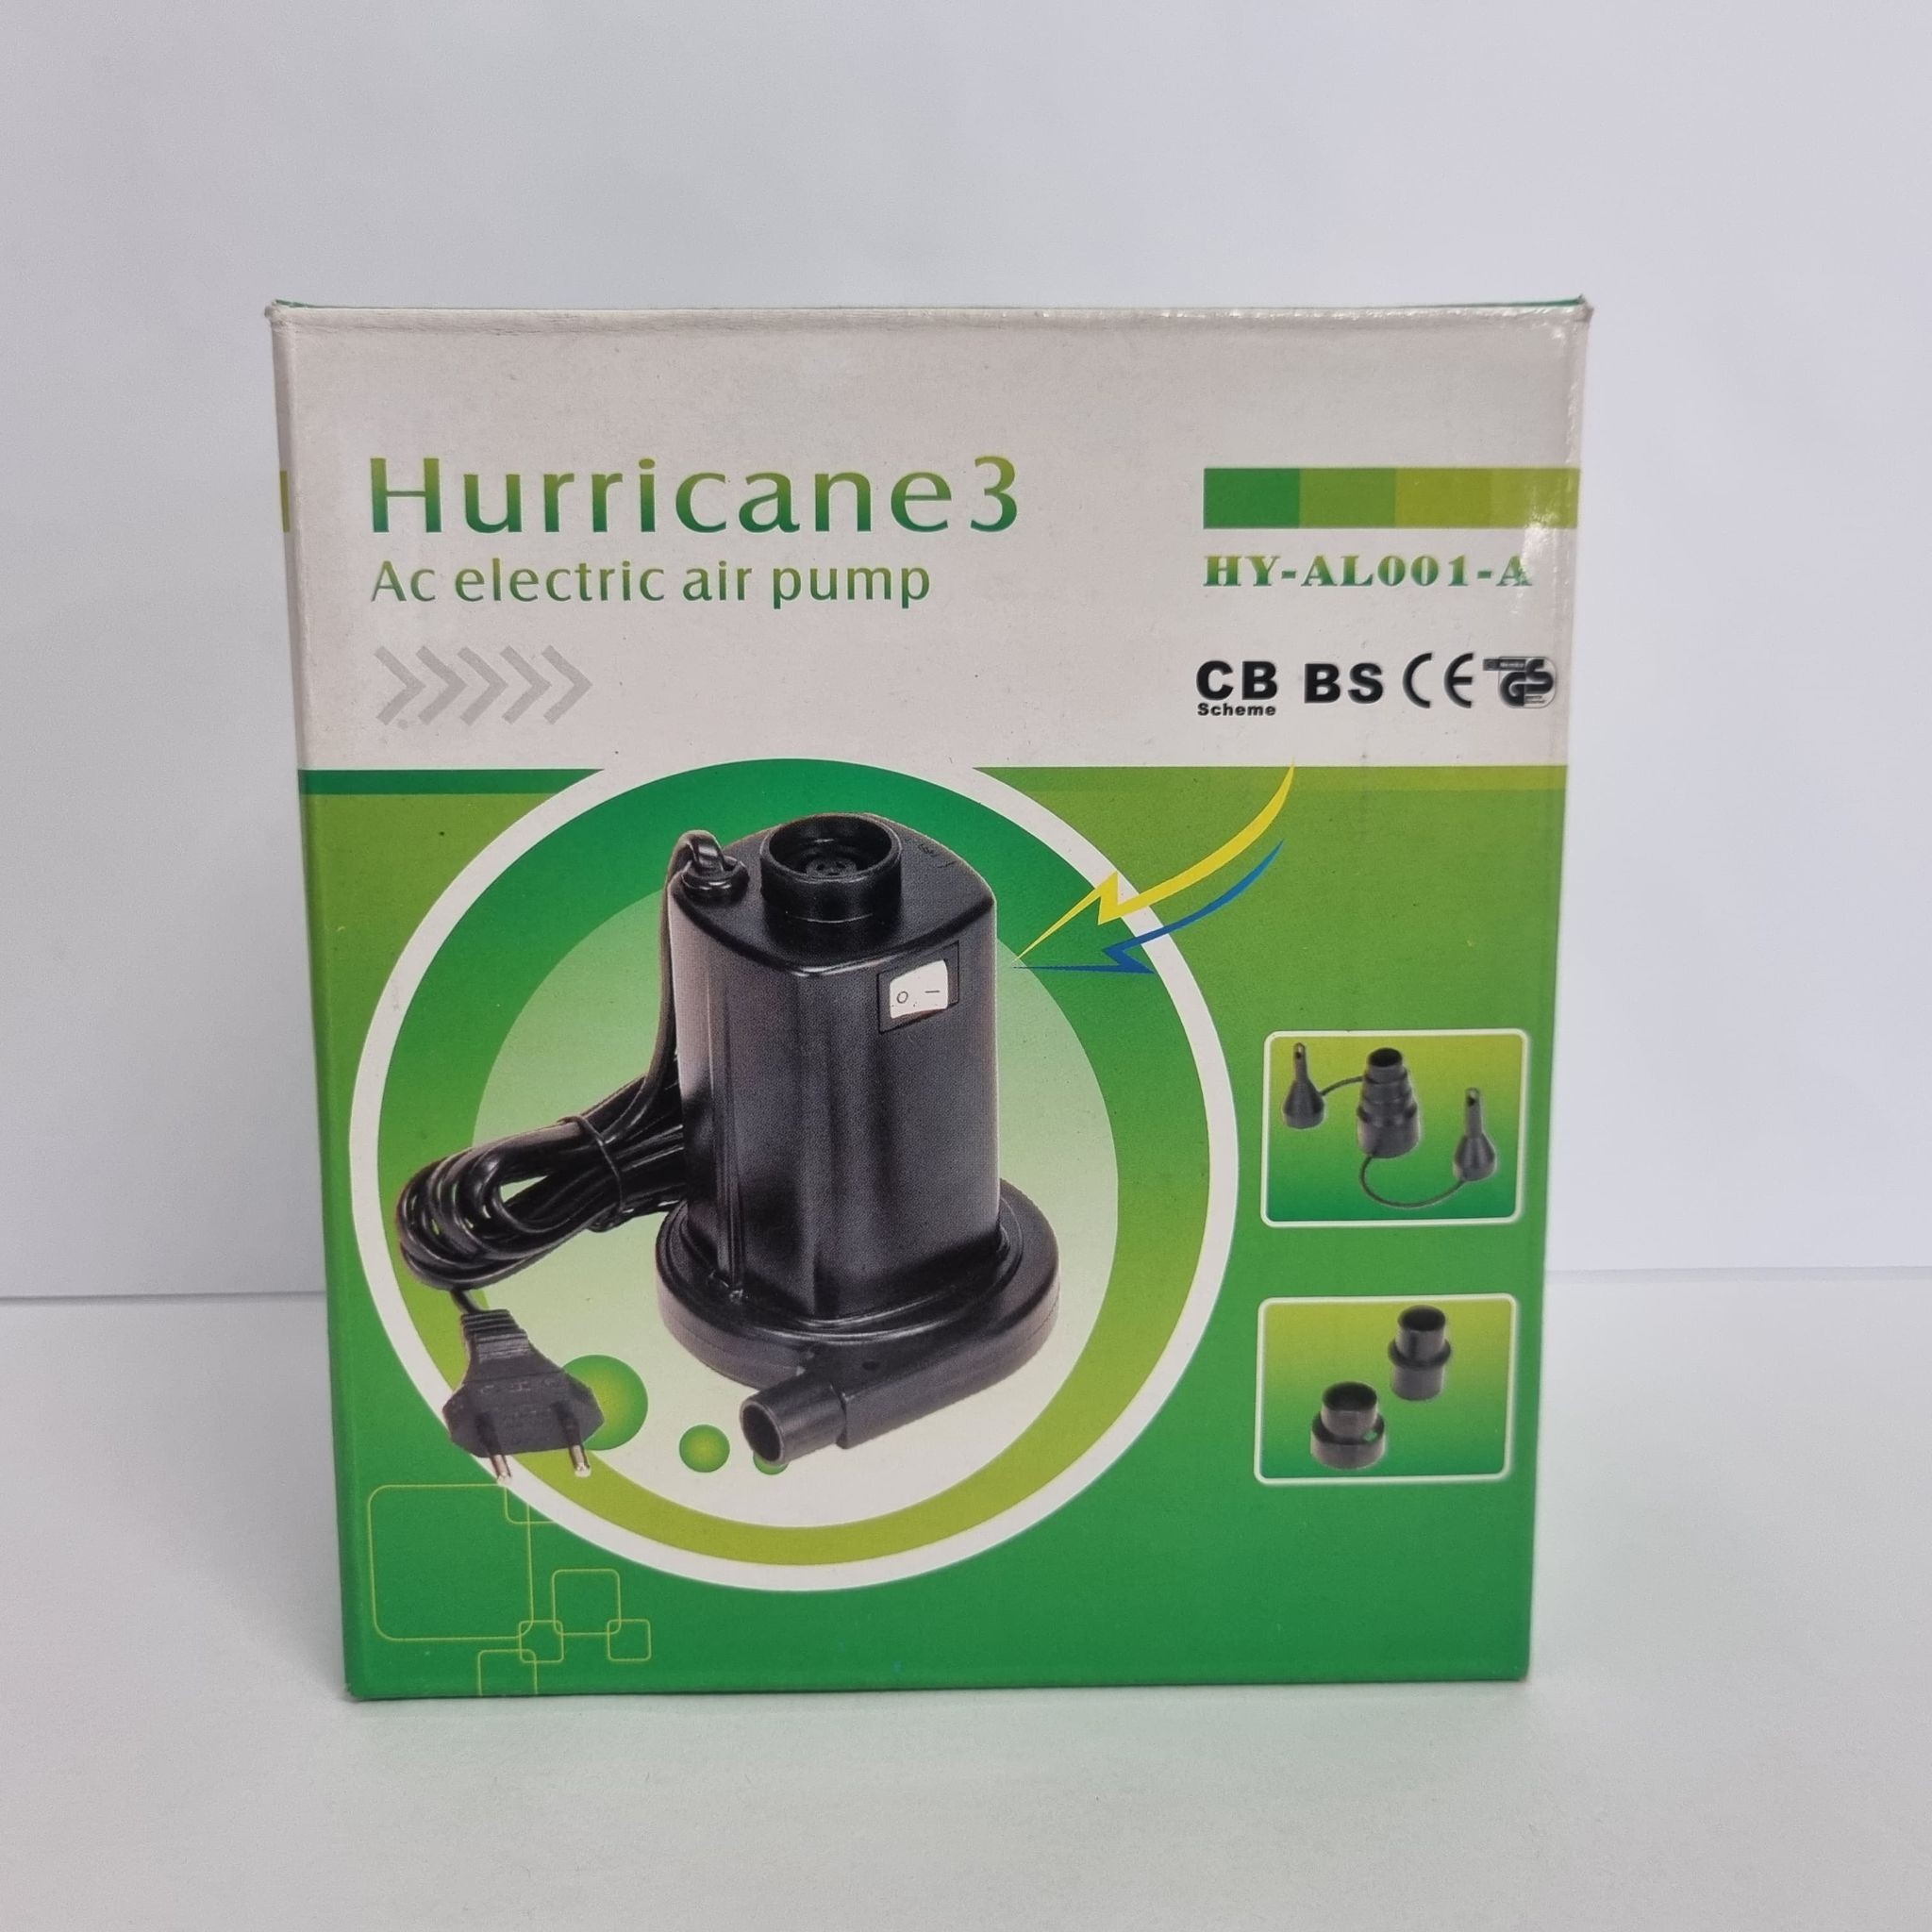 Hurricane 3 - Ac electric air pump